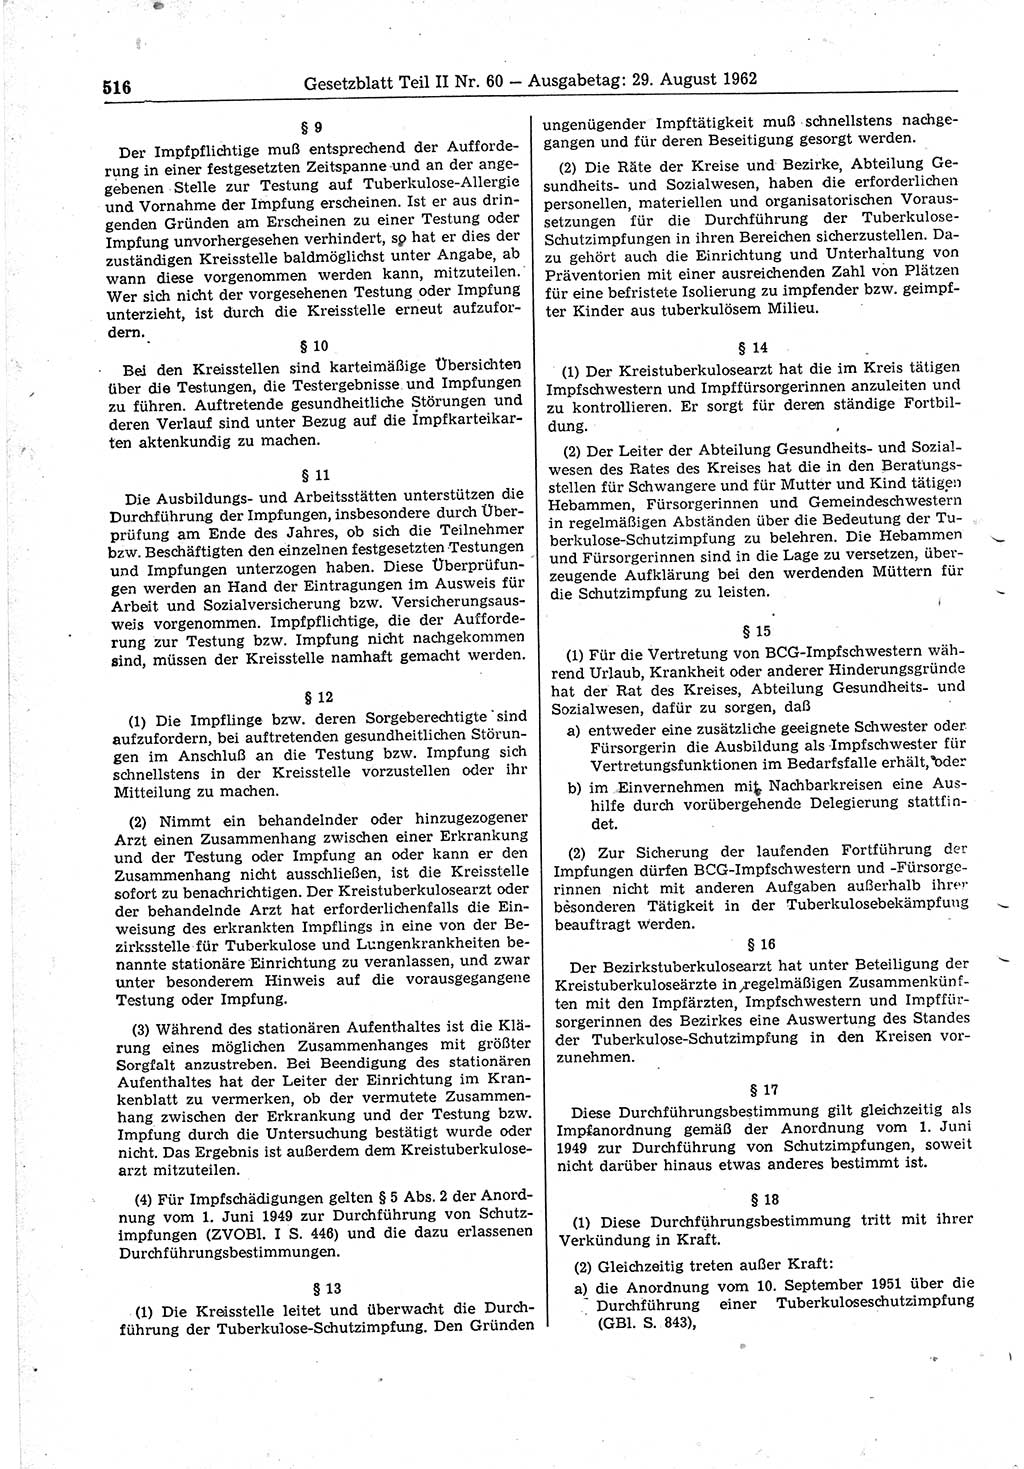 Gesetzblatt (GBl.) der Deutschen Demokratischen Republik (DDR) Teil ⅠⅠ 1962, Seite 516 (GBl. DDR ⅠⅠ 1962, S. 516)